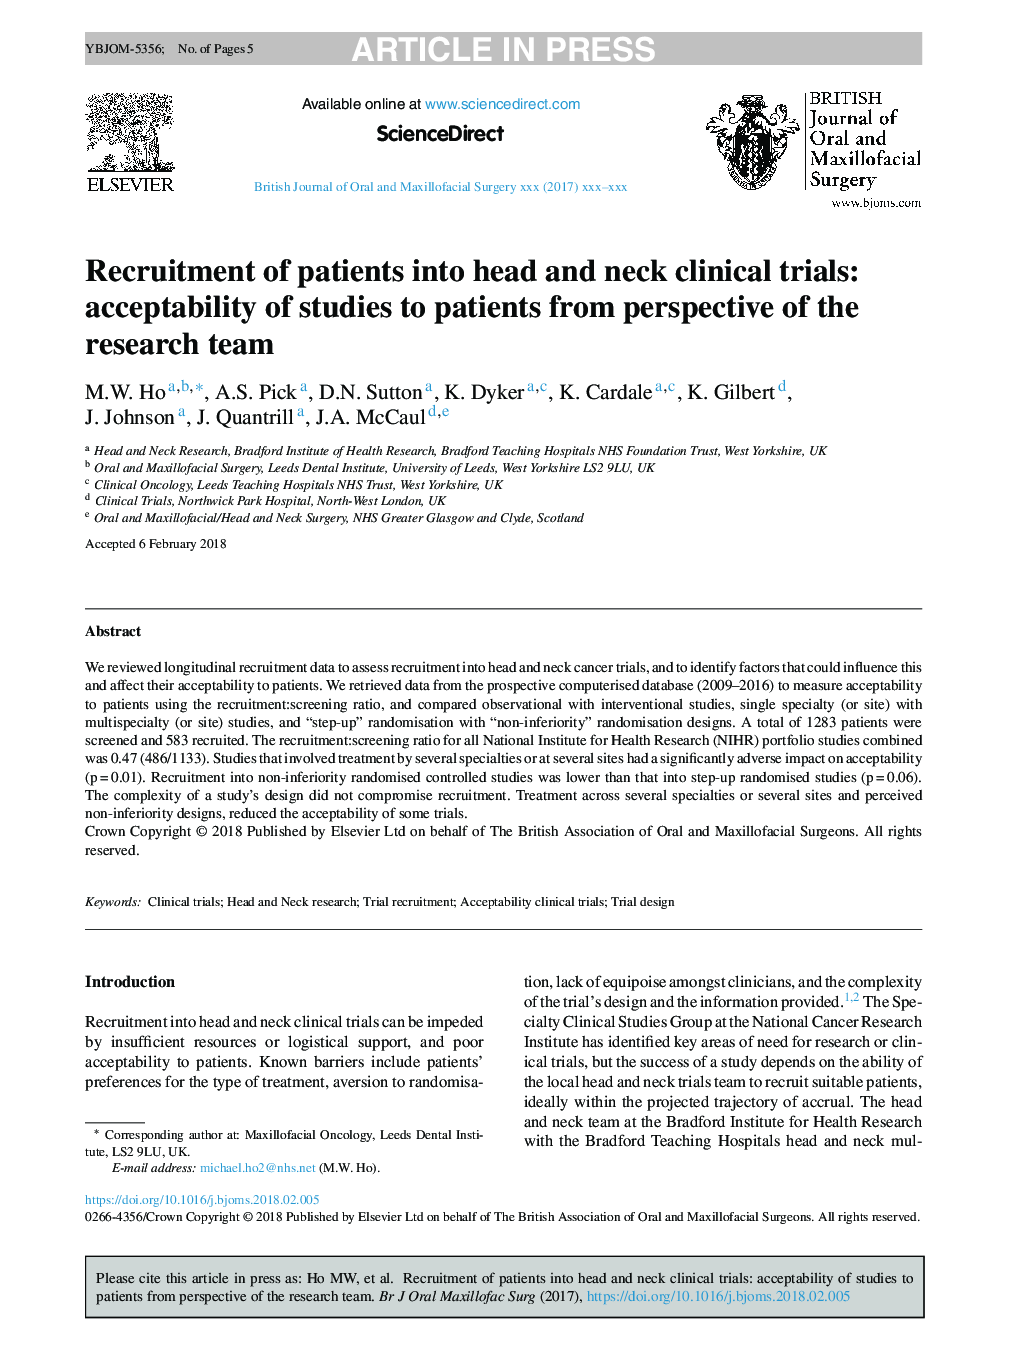 استخدام بیماران به آزمایشات بالینی سر و گردن: پذیرش مطالعات به بیماران از نظر تیم تحقیقاتی 